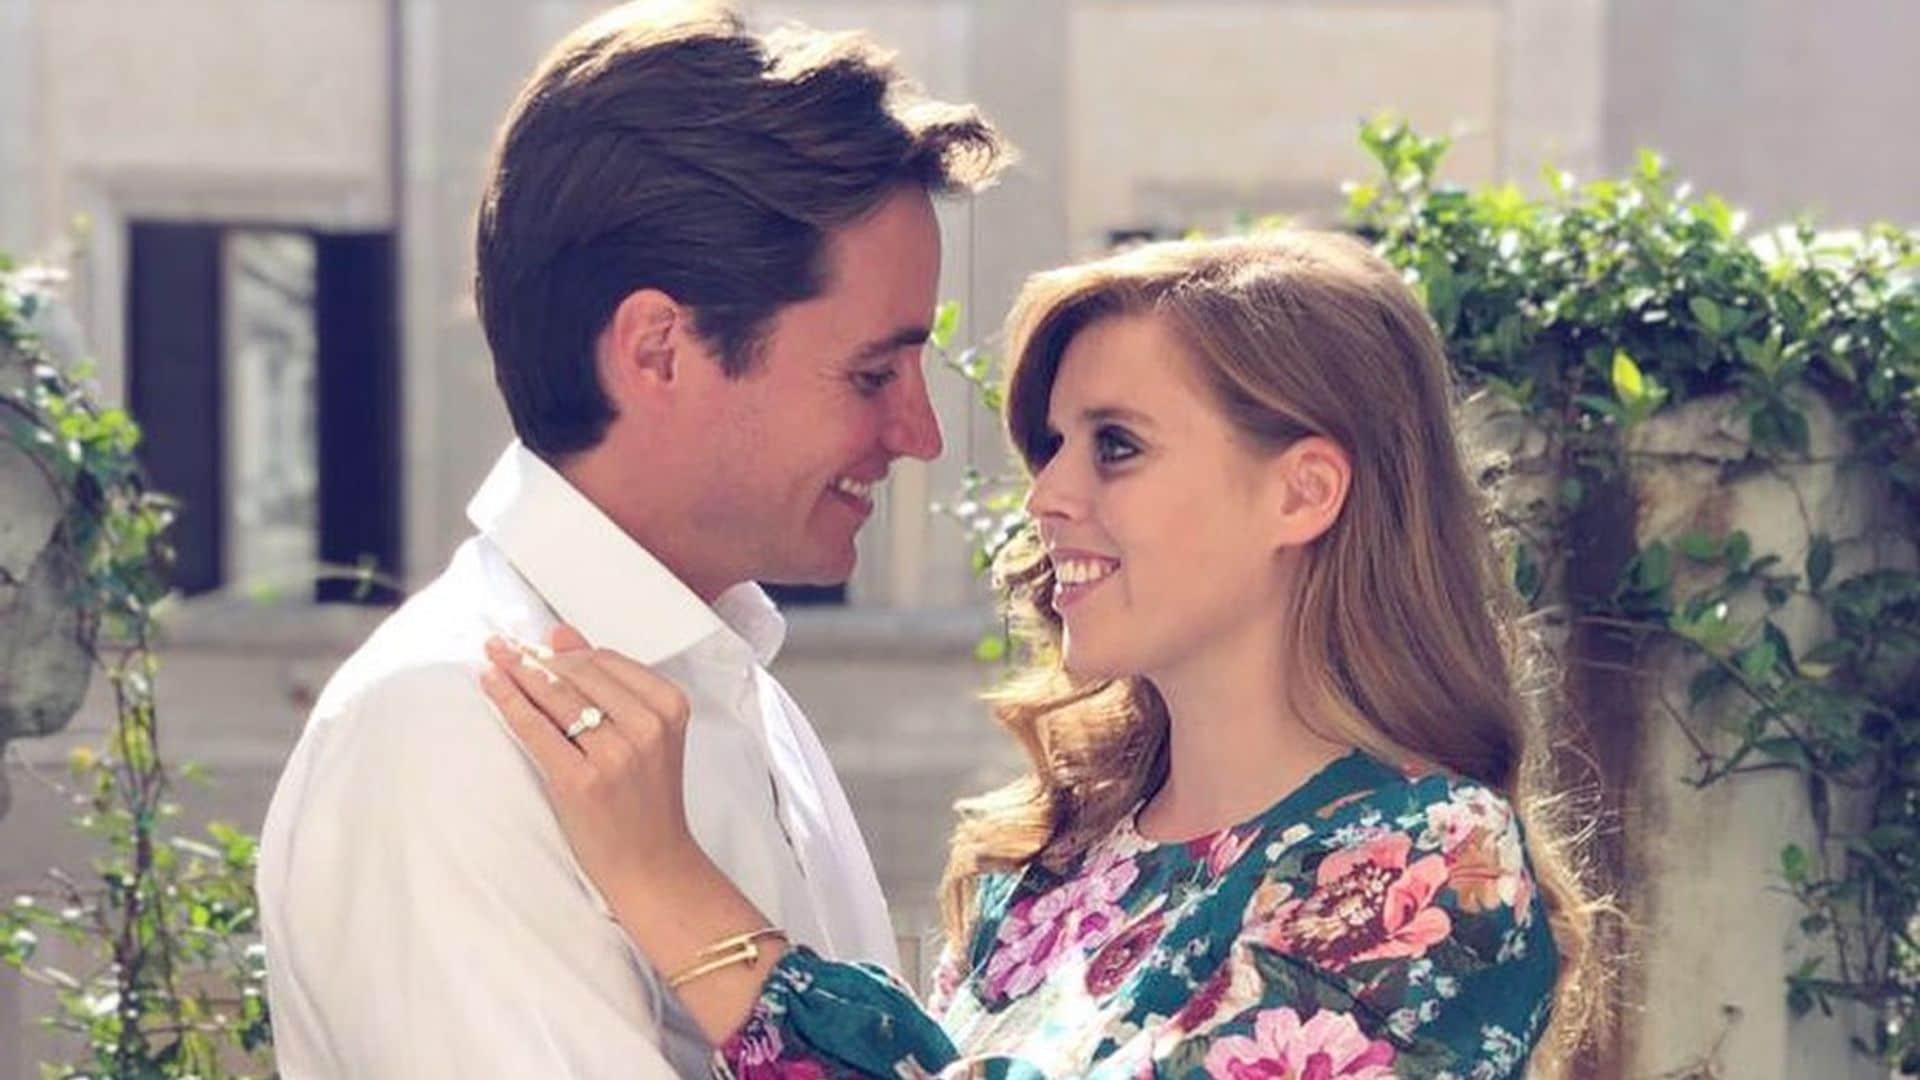 Fecha confirmada y nuevos datos sobre la boda de Beatriz de York y Edoardo Mapelli